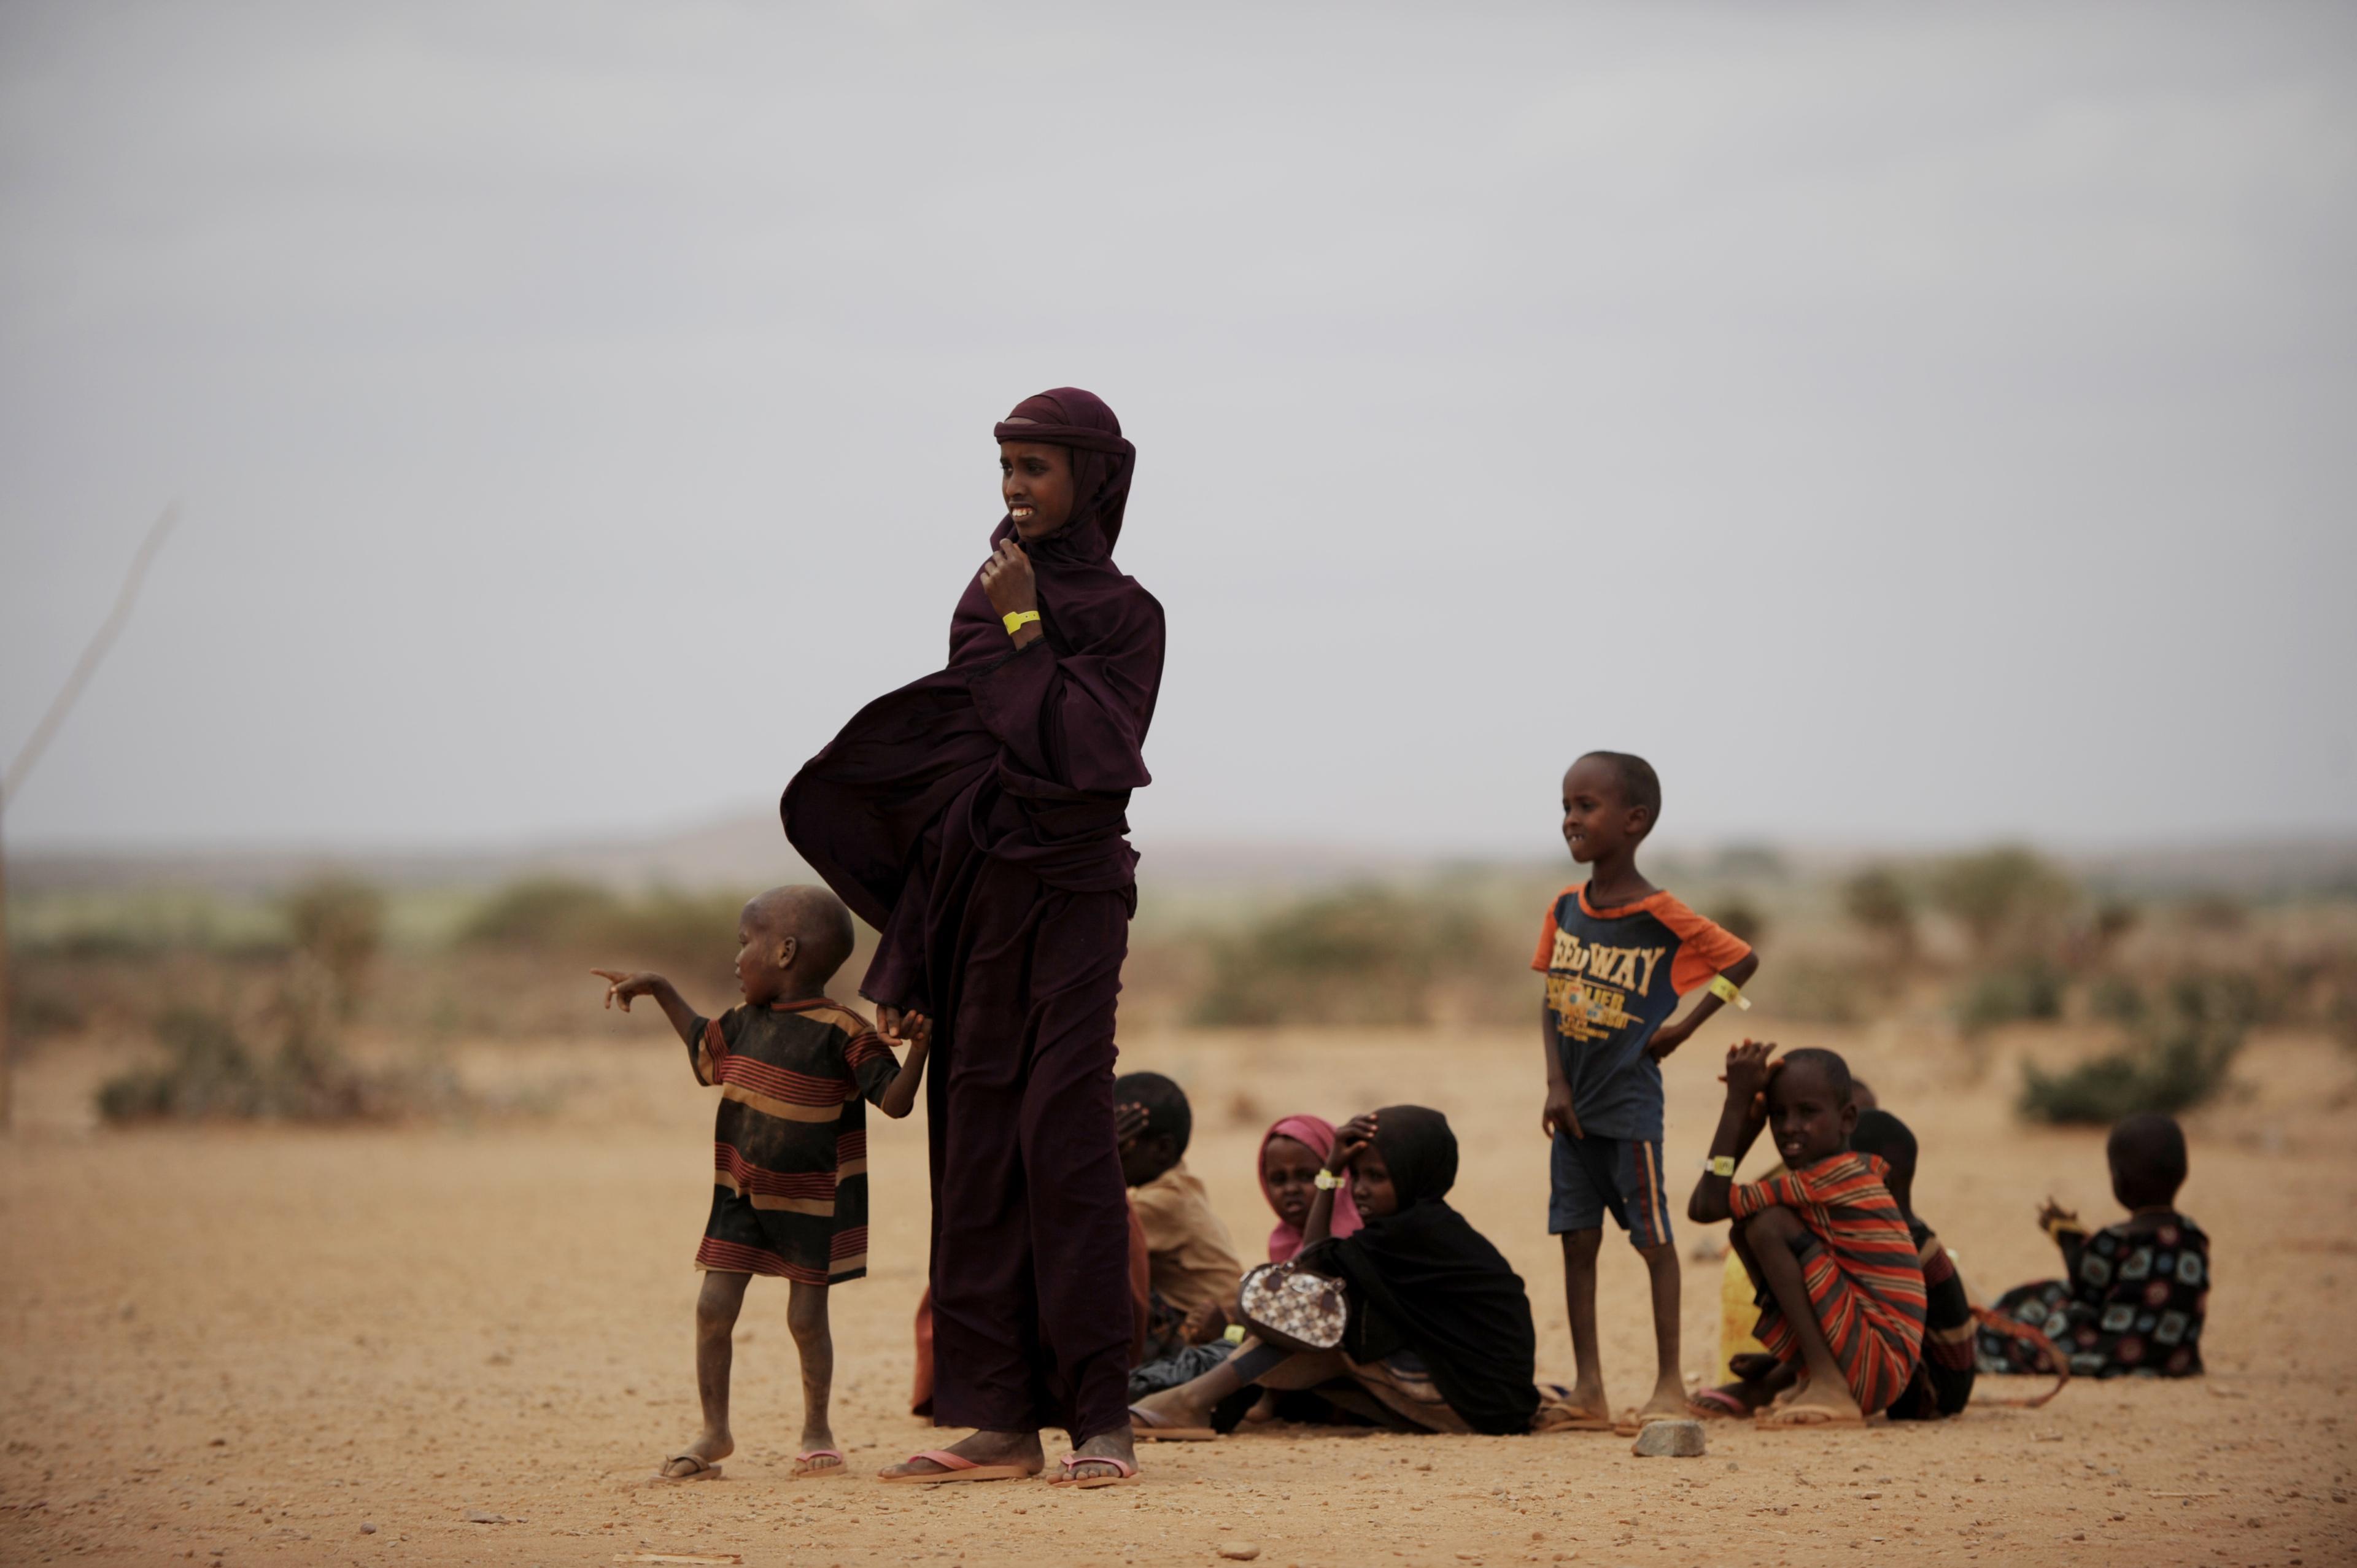  2011 drabbades Etiopien av svår torka vilket bidrog till svältkatastrof. Nu varnar FN för omfattande torka, den värsta på 30 år. (Foto: Roberto Schmidt /AFP/Getty Images)